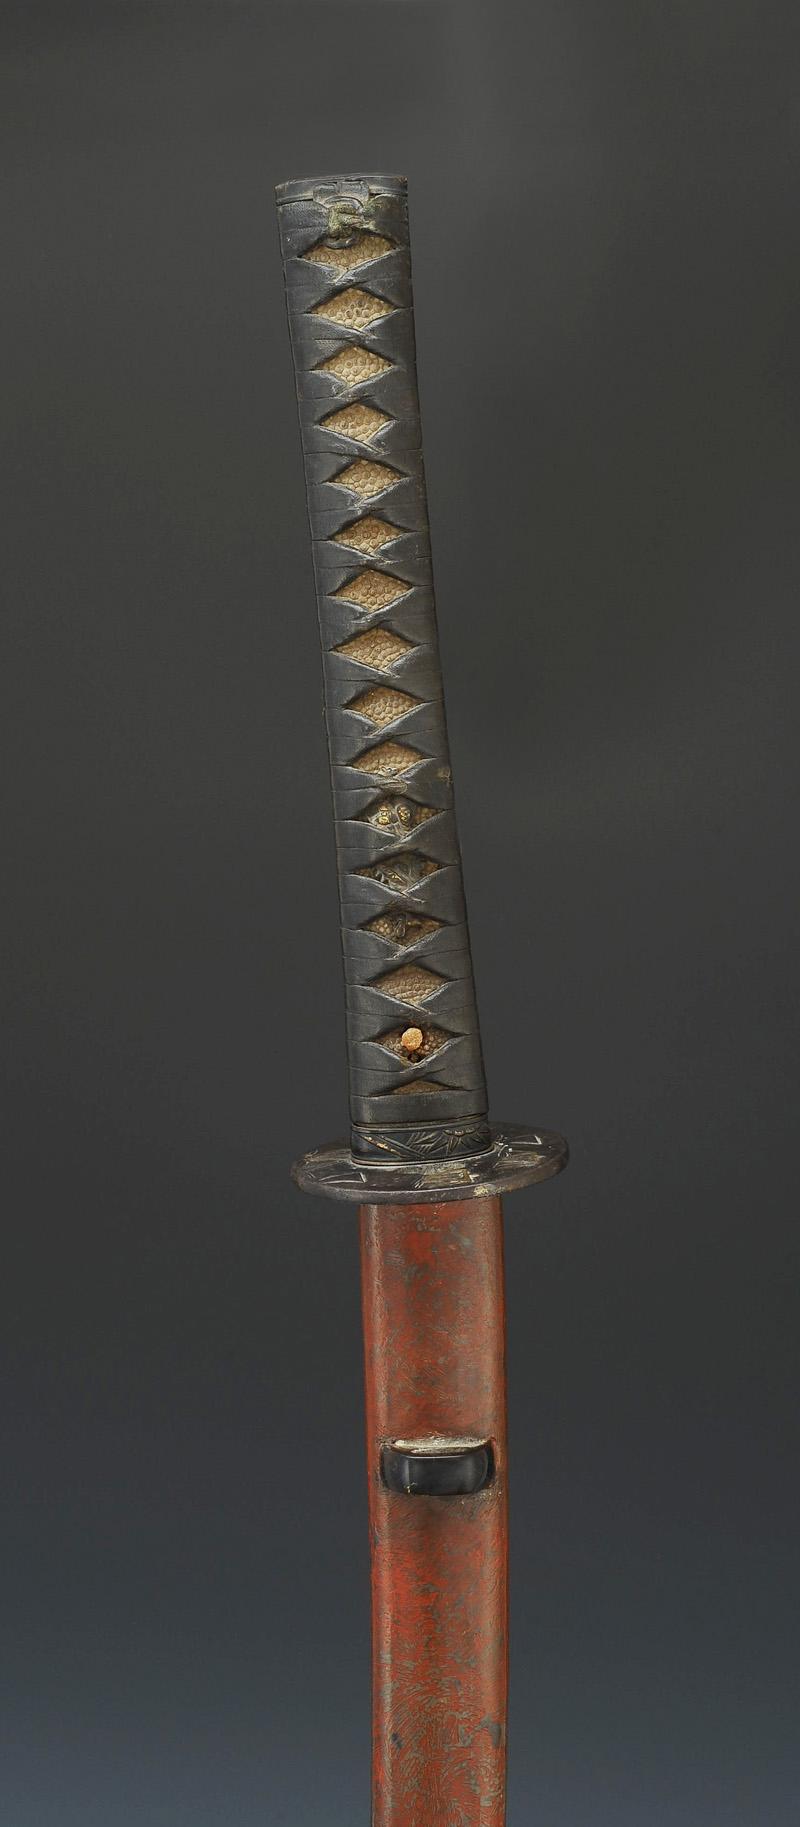 Le katana, l'essentiel à savoir sur le sabre Japonais